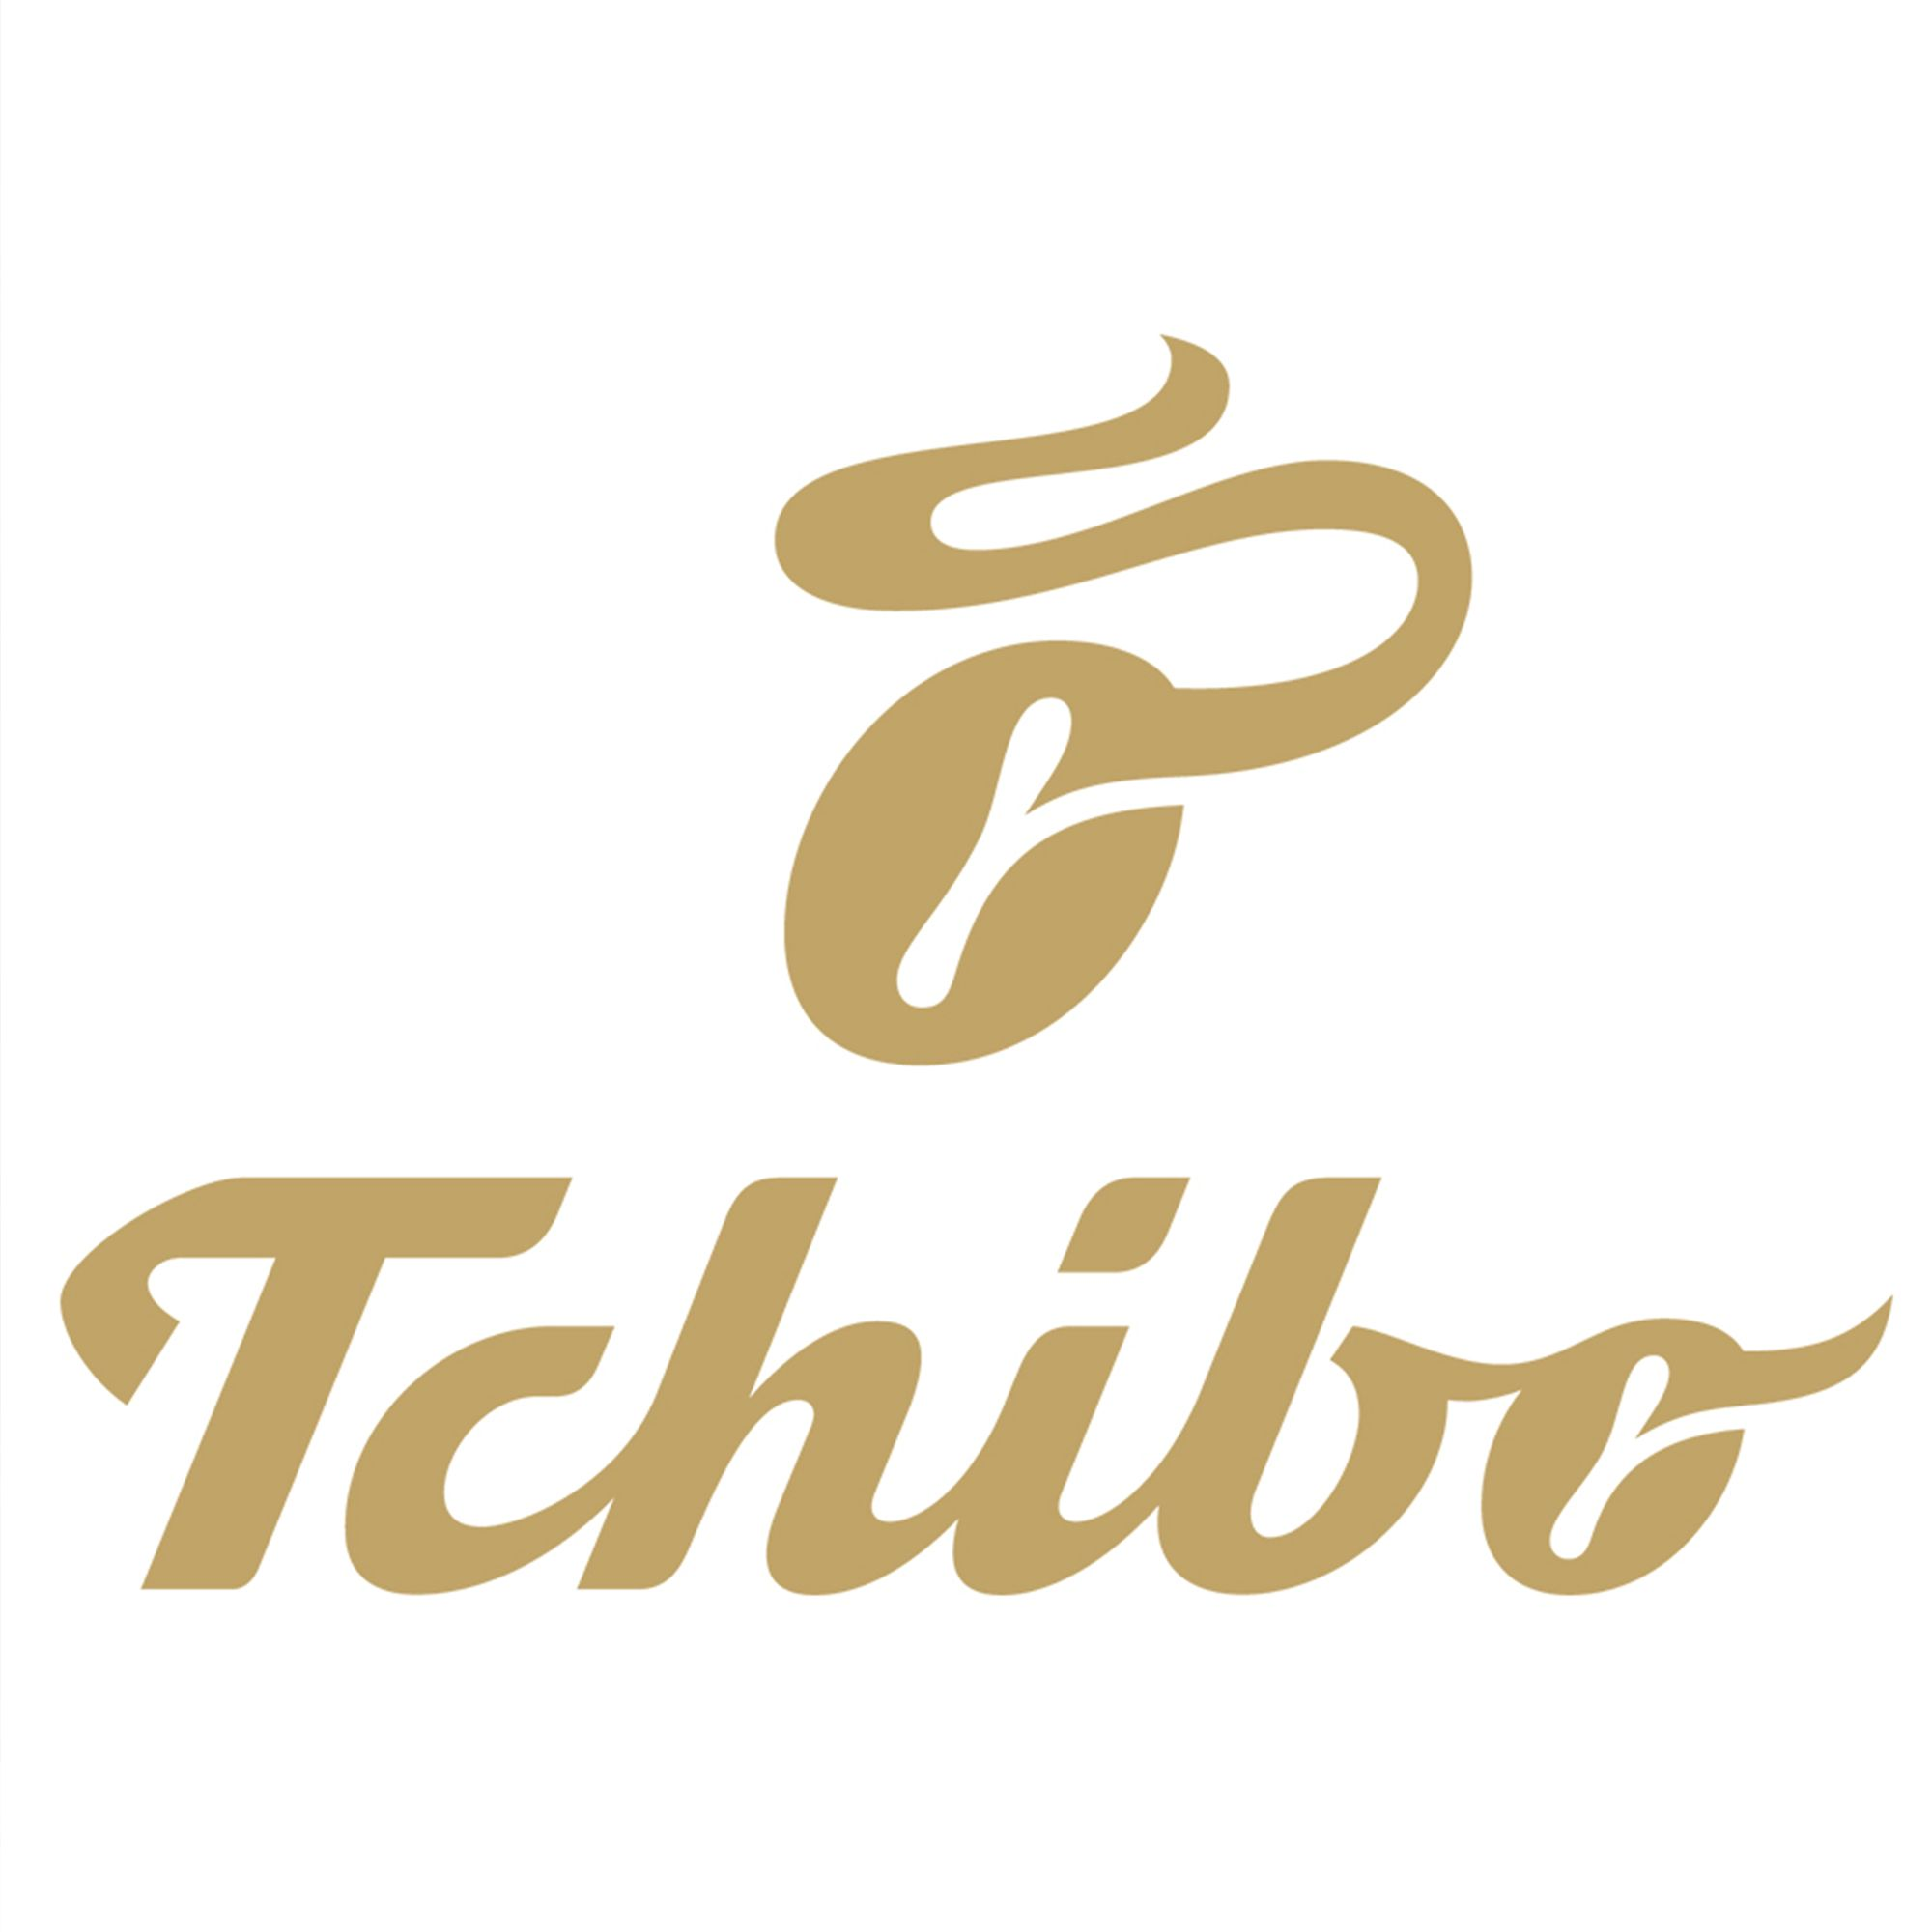 TCHIBO Kaffeebereiter Rot Press Siebstempelkanne French 800ml